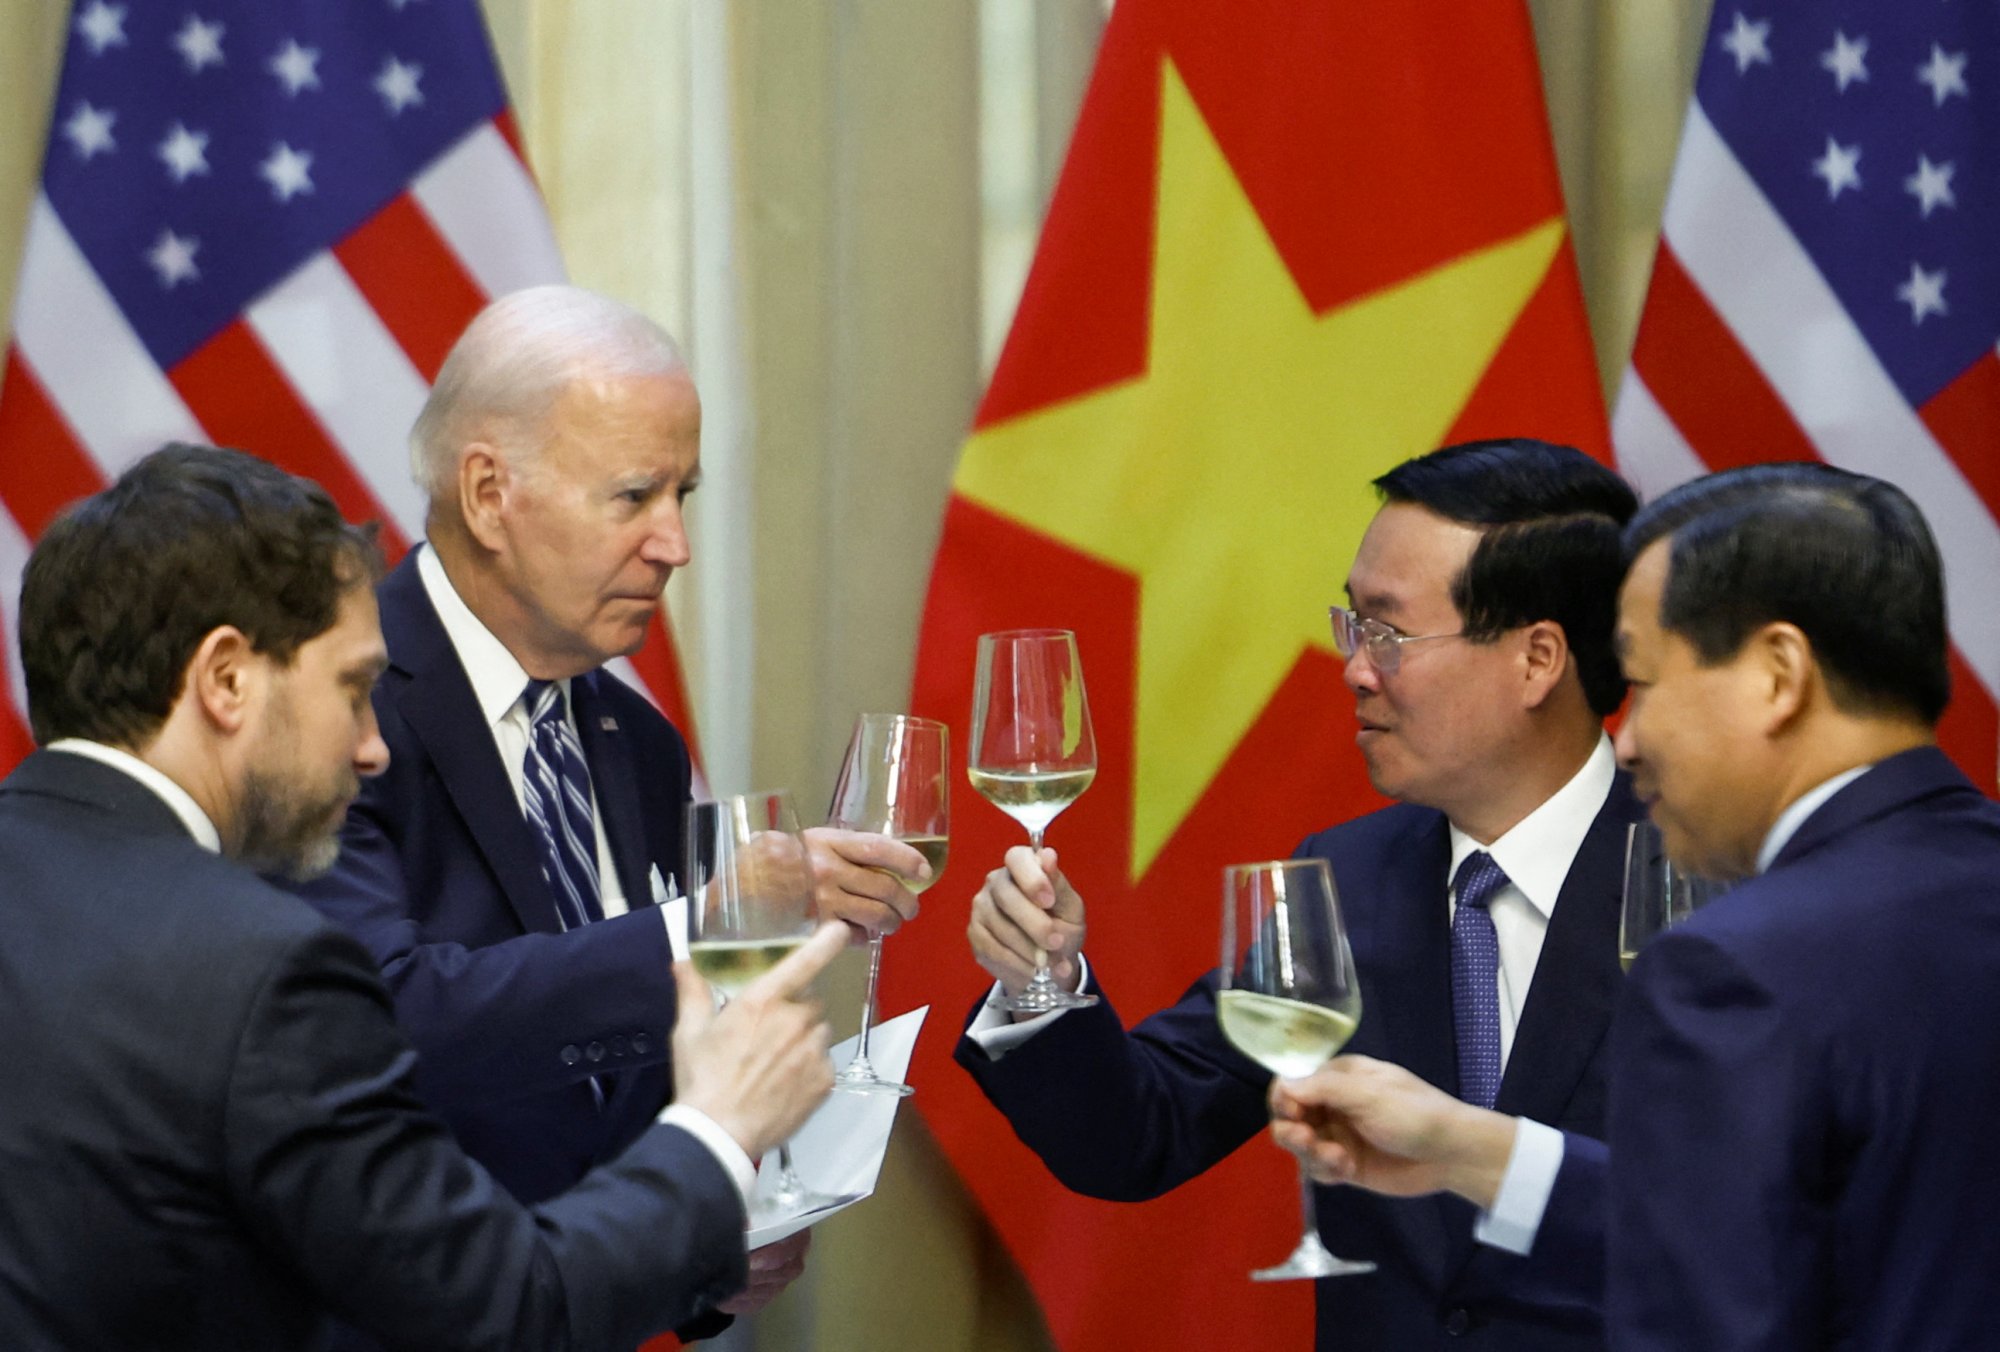 ΗΠΑ: Οι ανησυχίες για την Κίνα οδηγούν σε ιστορική αναβάθμιση των σχέσεων με το Βιετνάμ